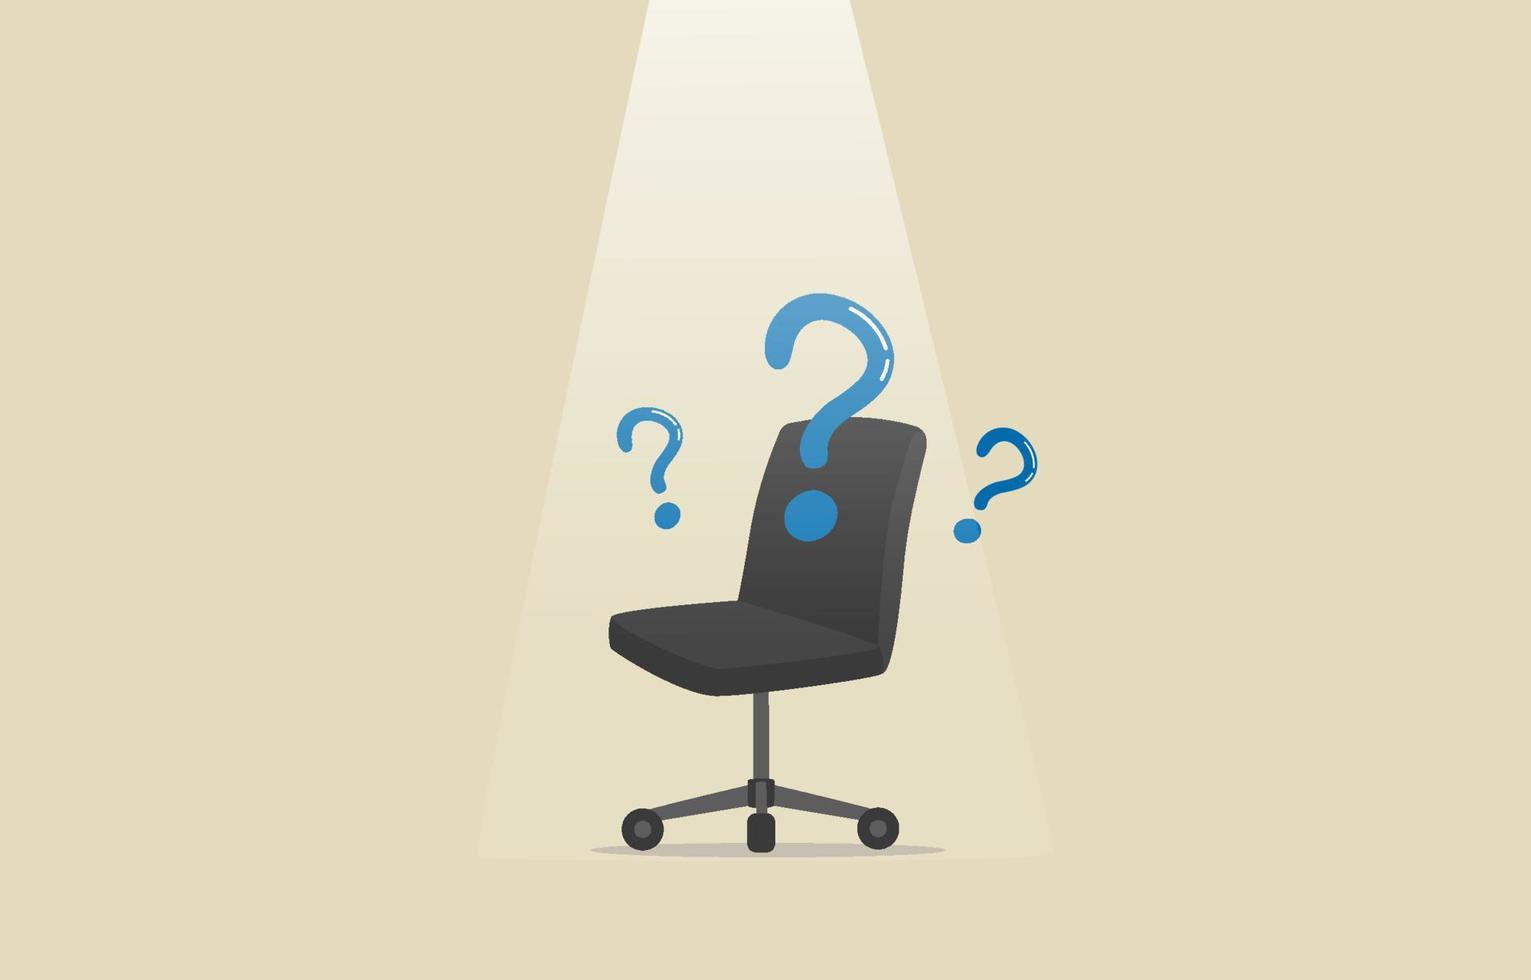 reclutamiento. contratación. preguntas de solicitud de empleo. publicar currículums. silla de oficina y preguntas. ilustración vector